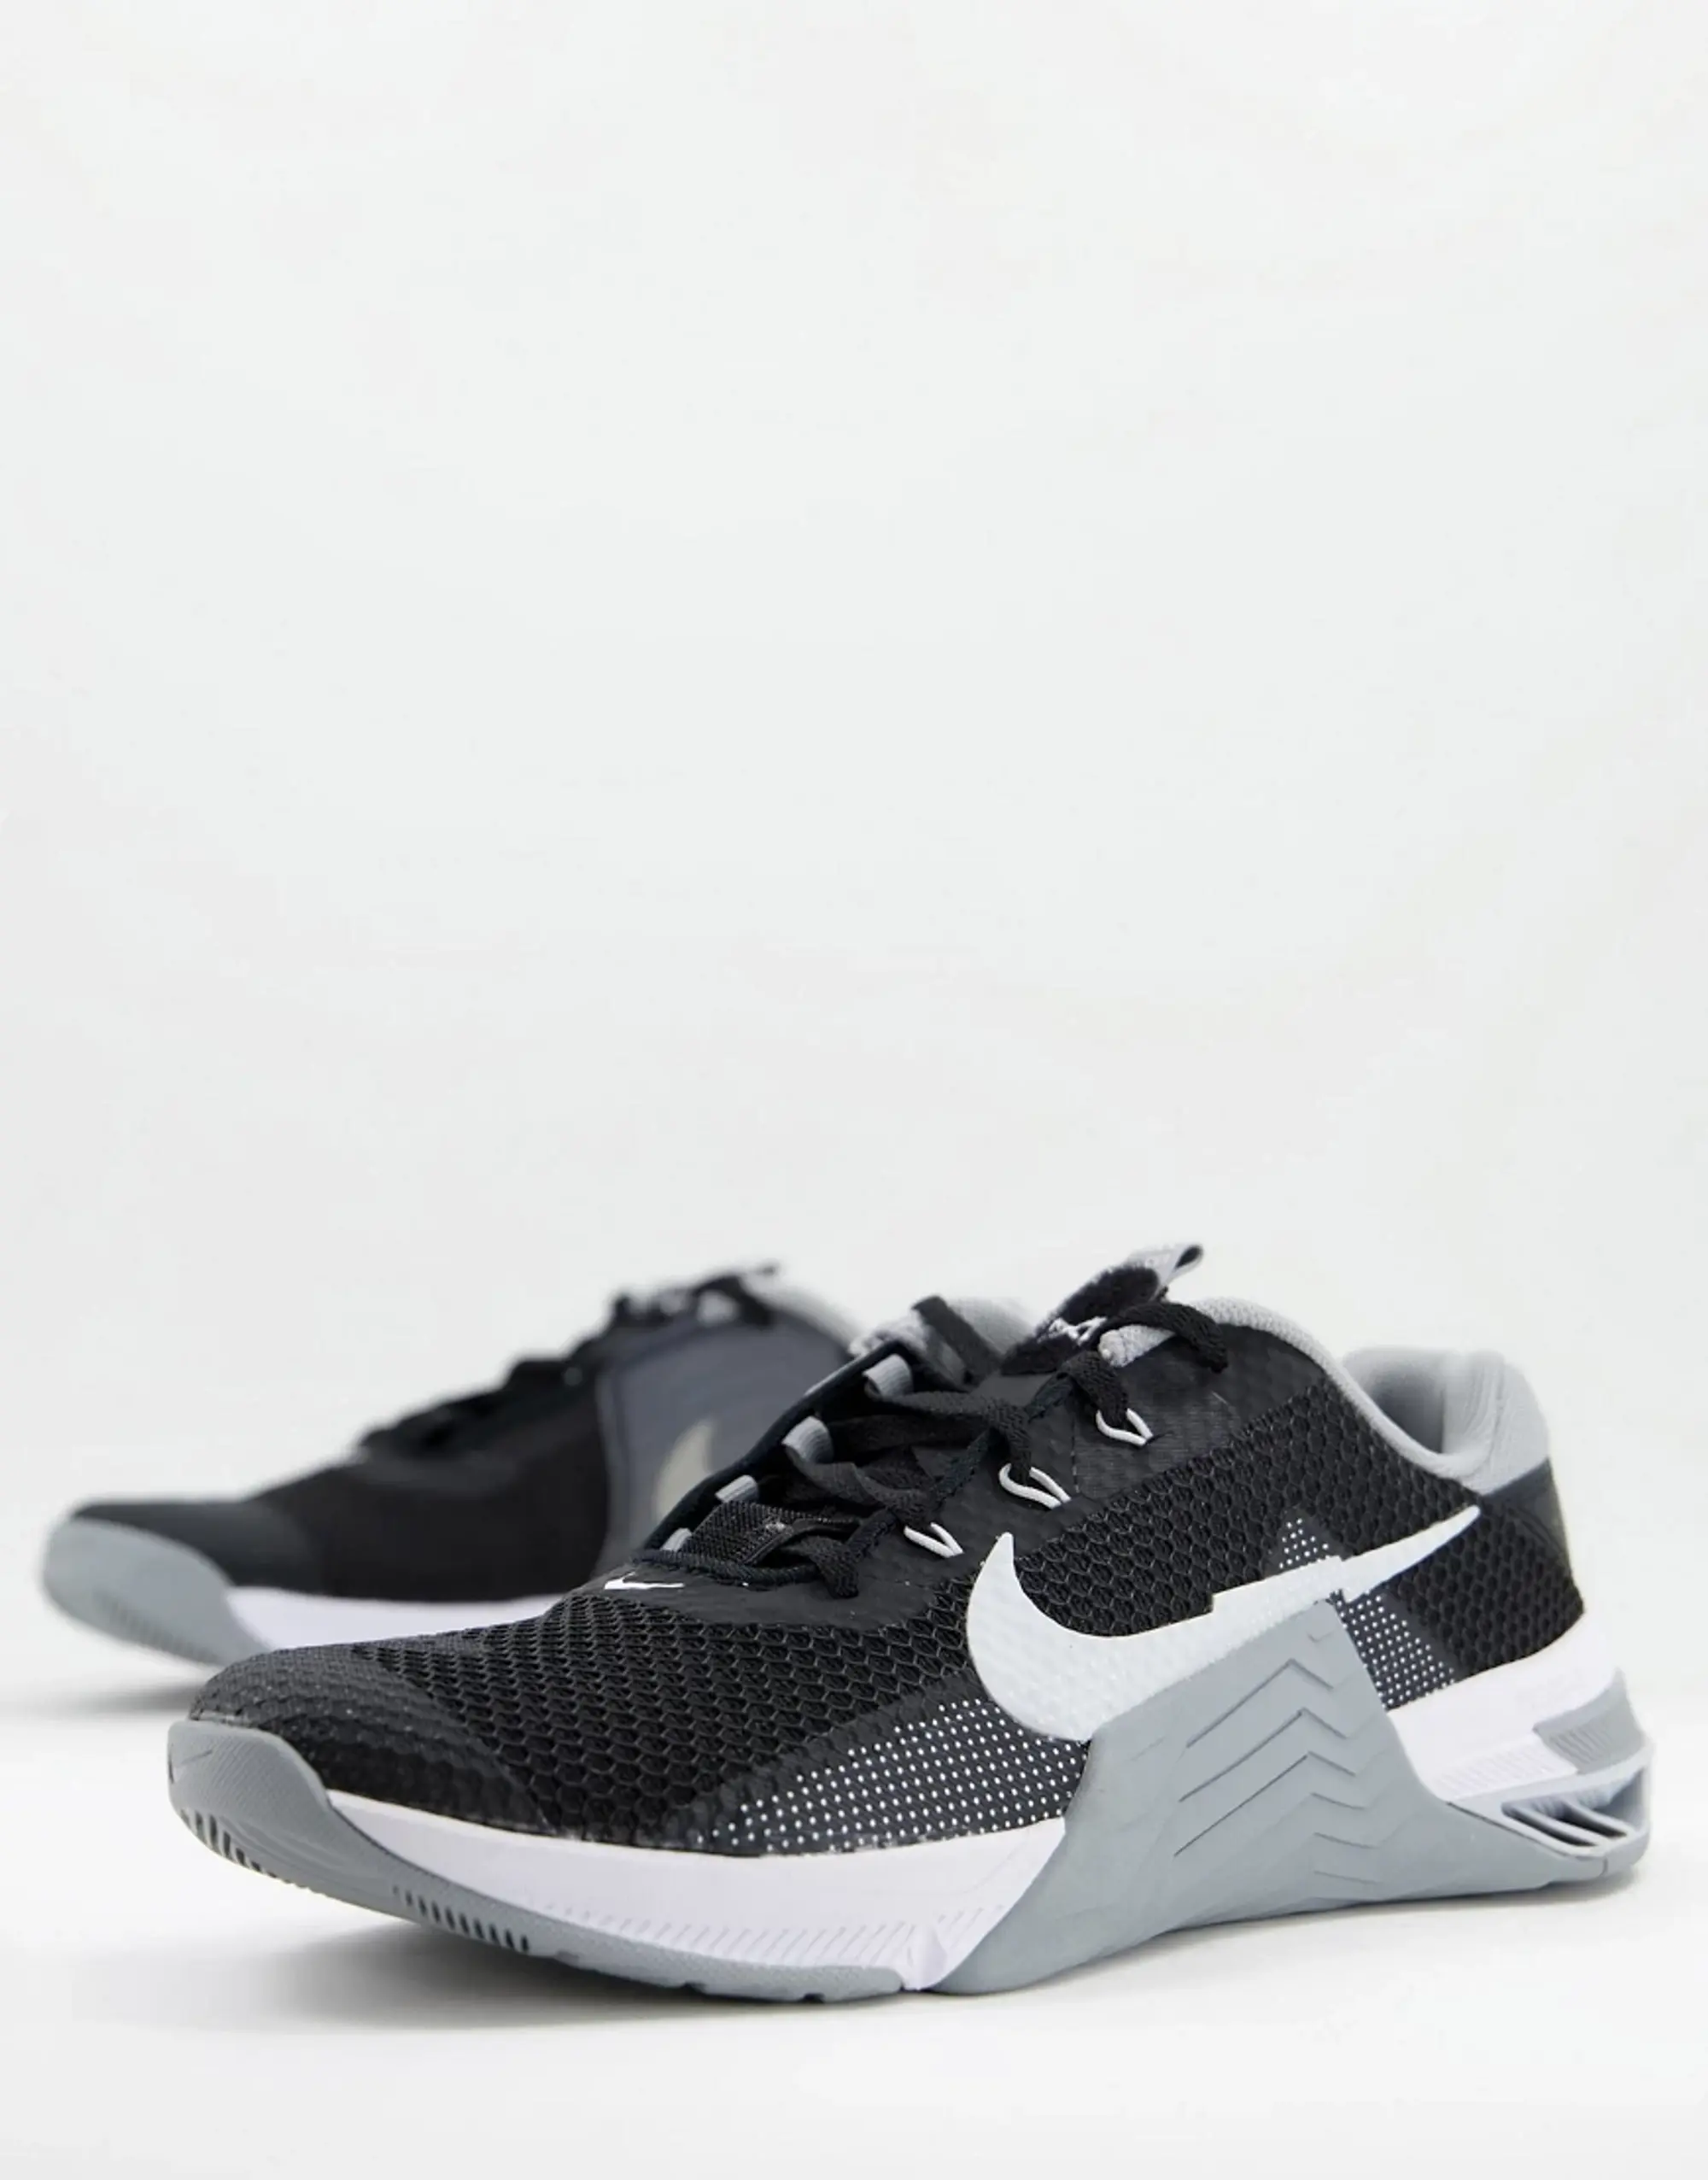 Nike Metcon 7 Mens Training Shoes